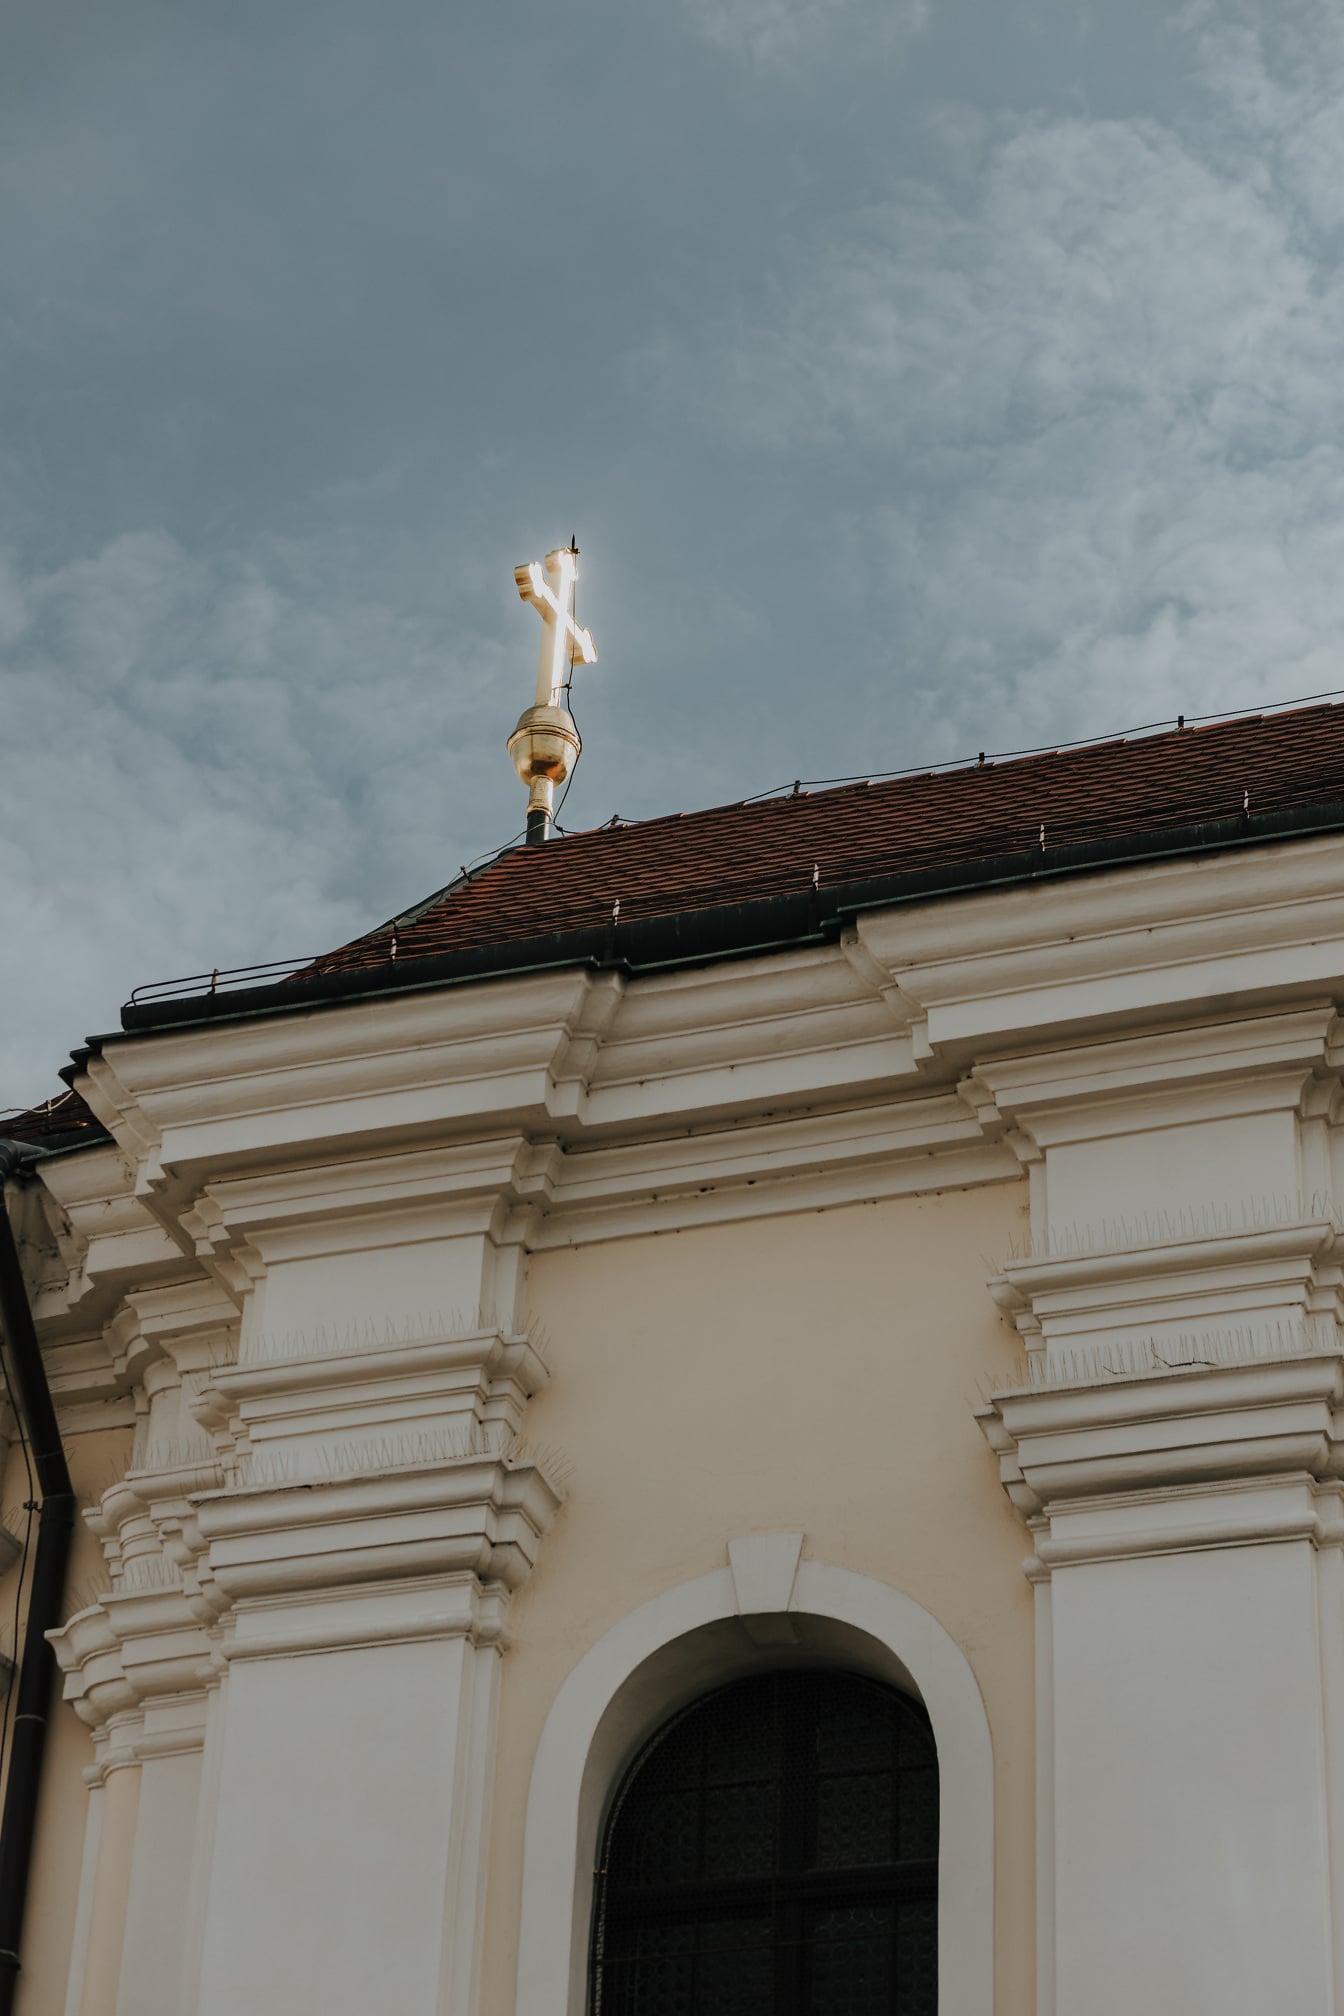 Χρυσός σταυρός λάμψης στη στέγη της εκκλησίας